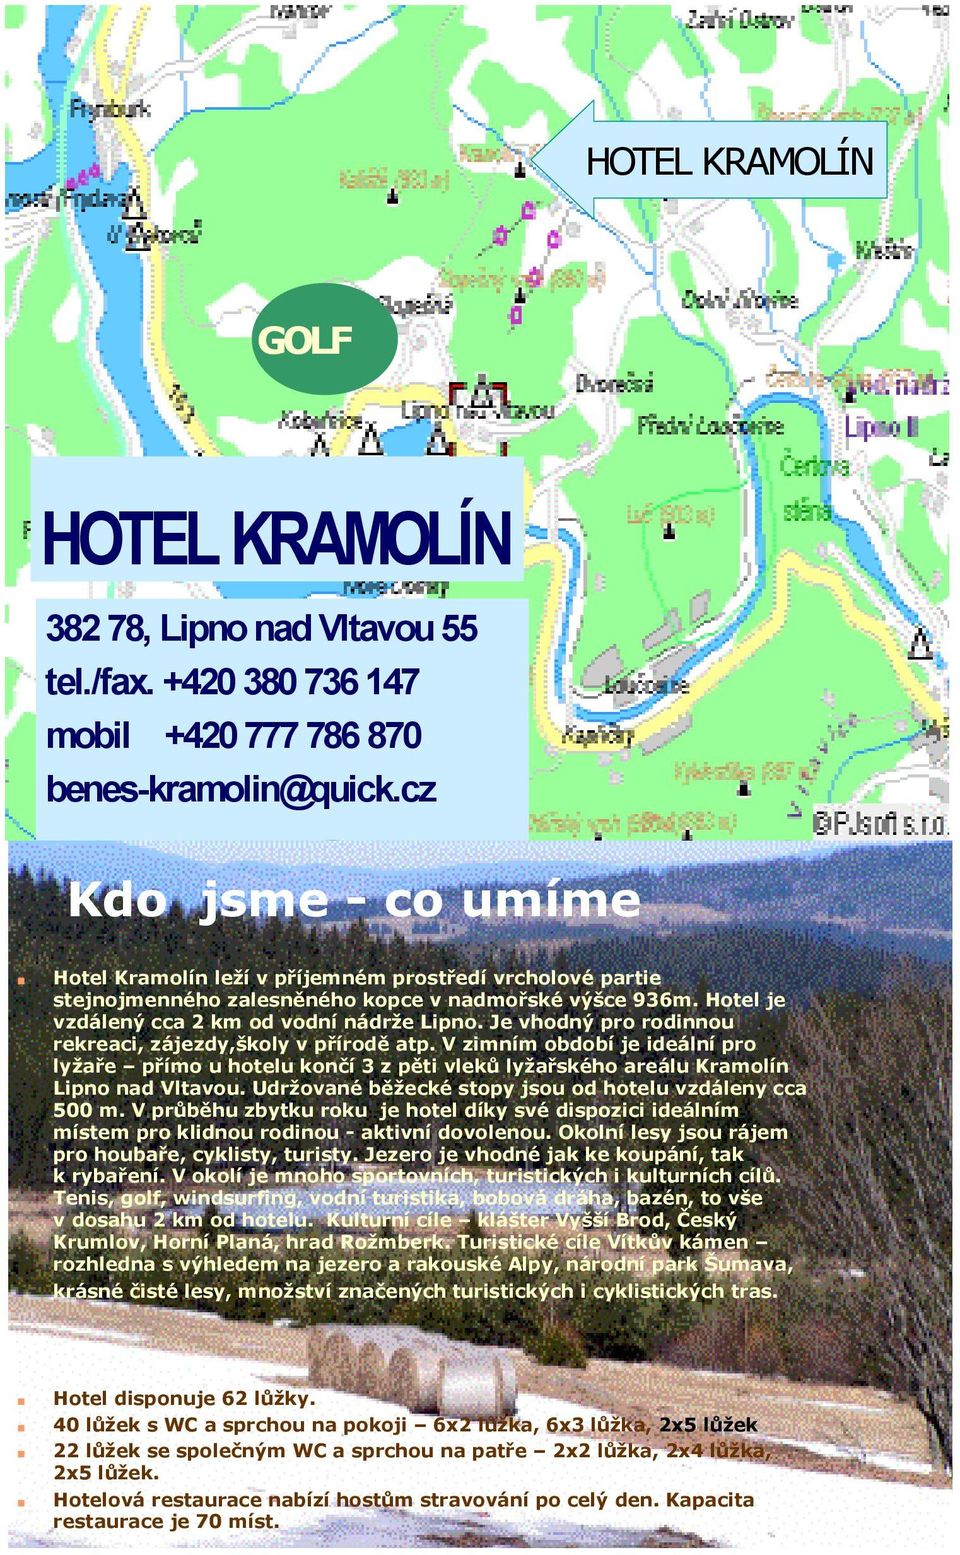 Je vhodný pro rodinnou rekreaci, zájezdy,školy v přírodě atp. V zimním období je ideální pro lyžaře přímo u hotelu končí 3 z pěti vleků lyžařského areálu Kramolín Lipno nad Vltavou.